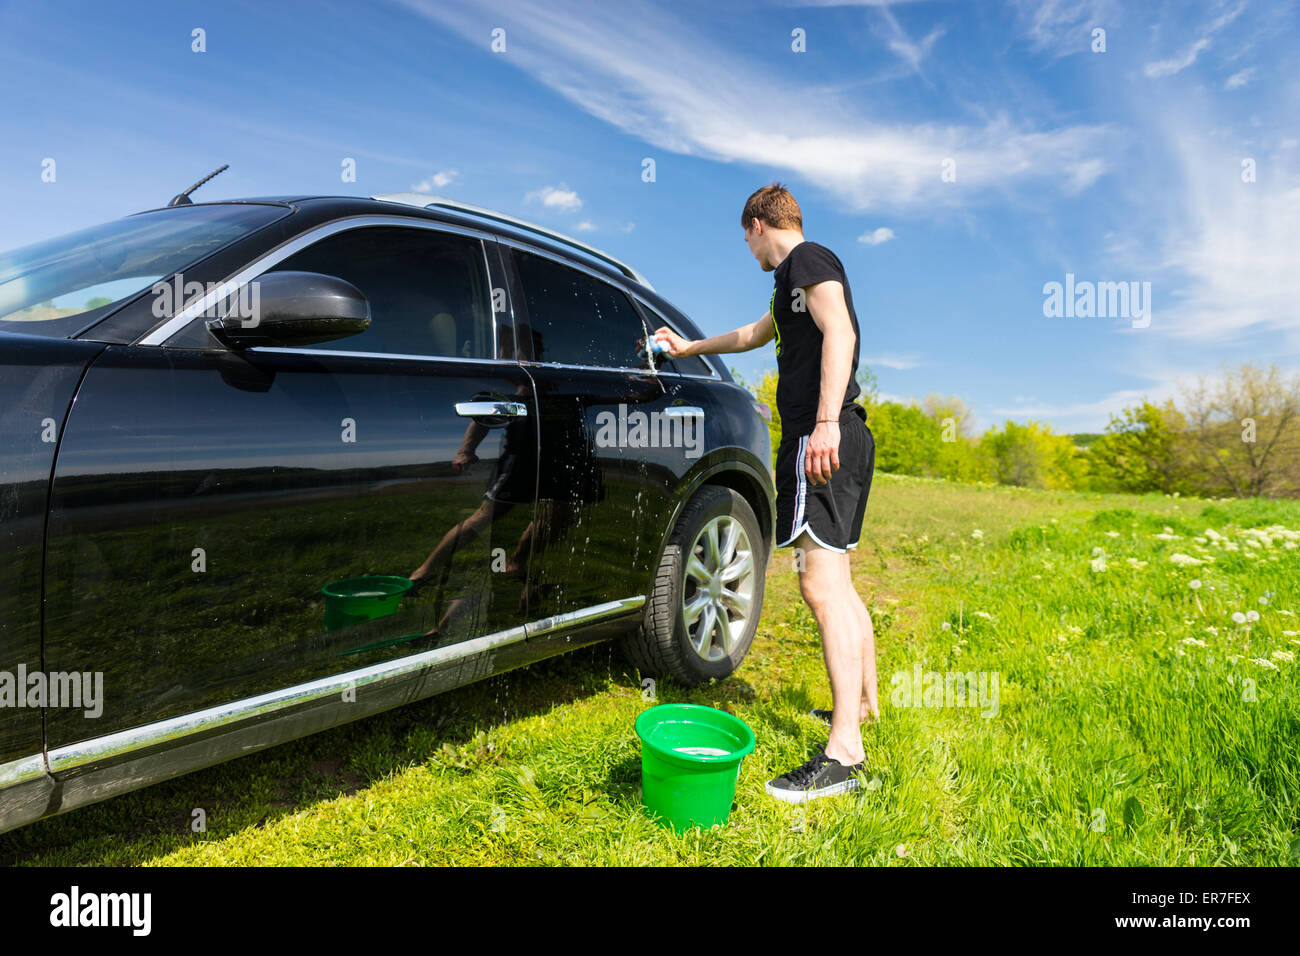 La longueur totale de l'homme lave voiture avec une éponge savonneuse en vert sur le terrain herbeux journée ensoleillée avec ciel bleu Banque D'Images